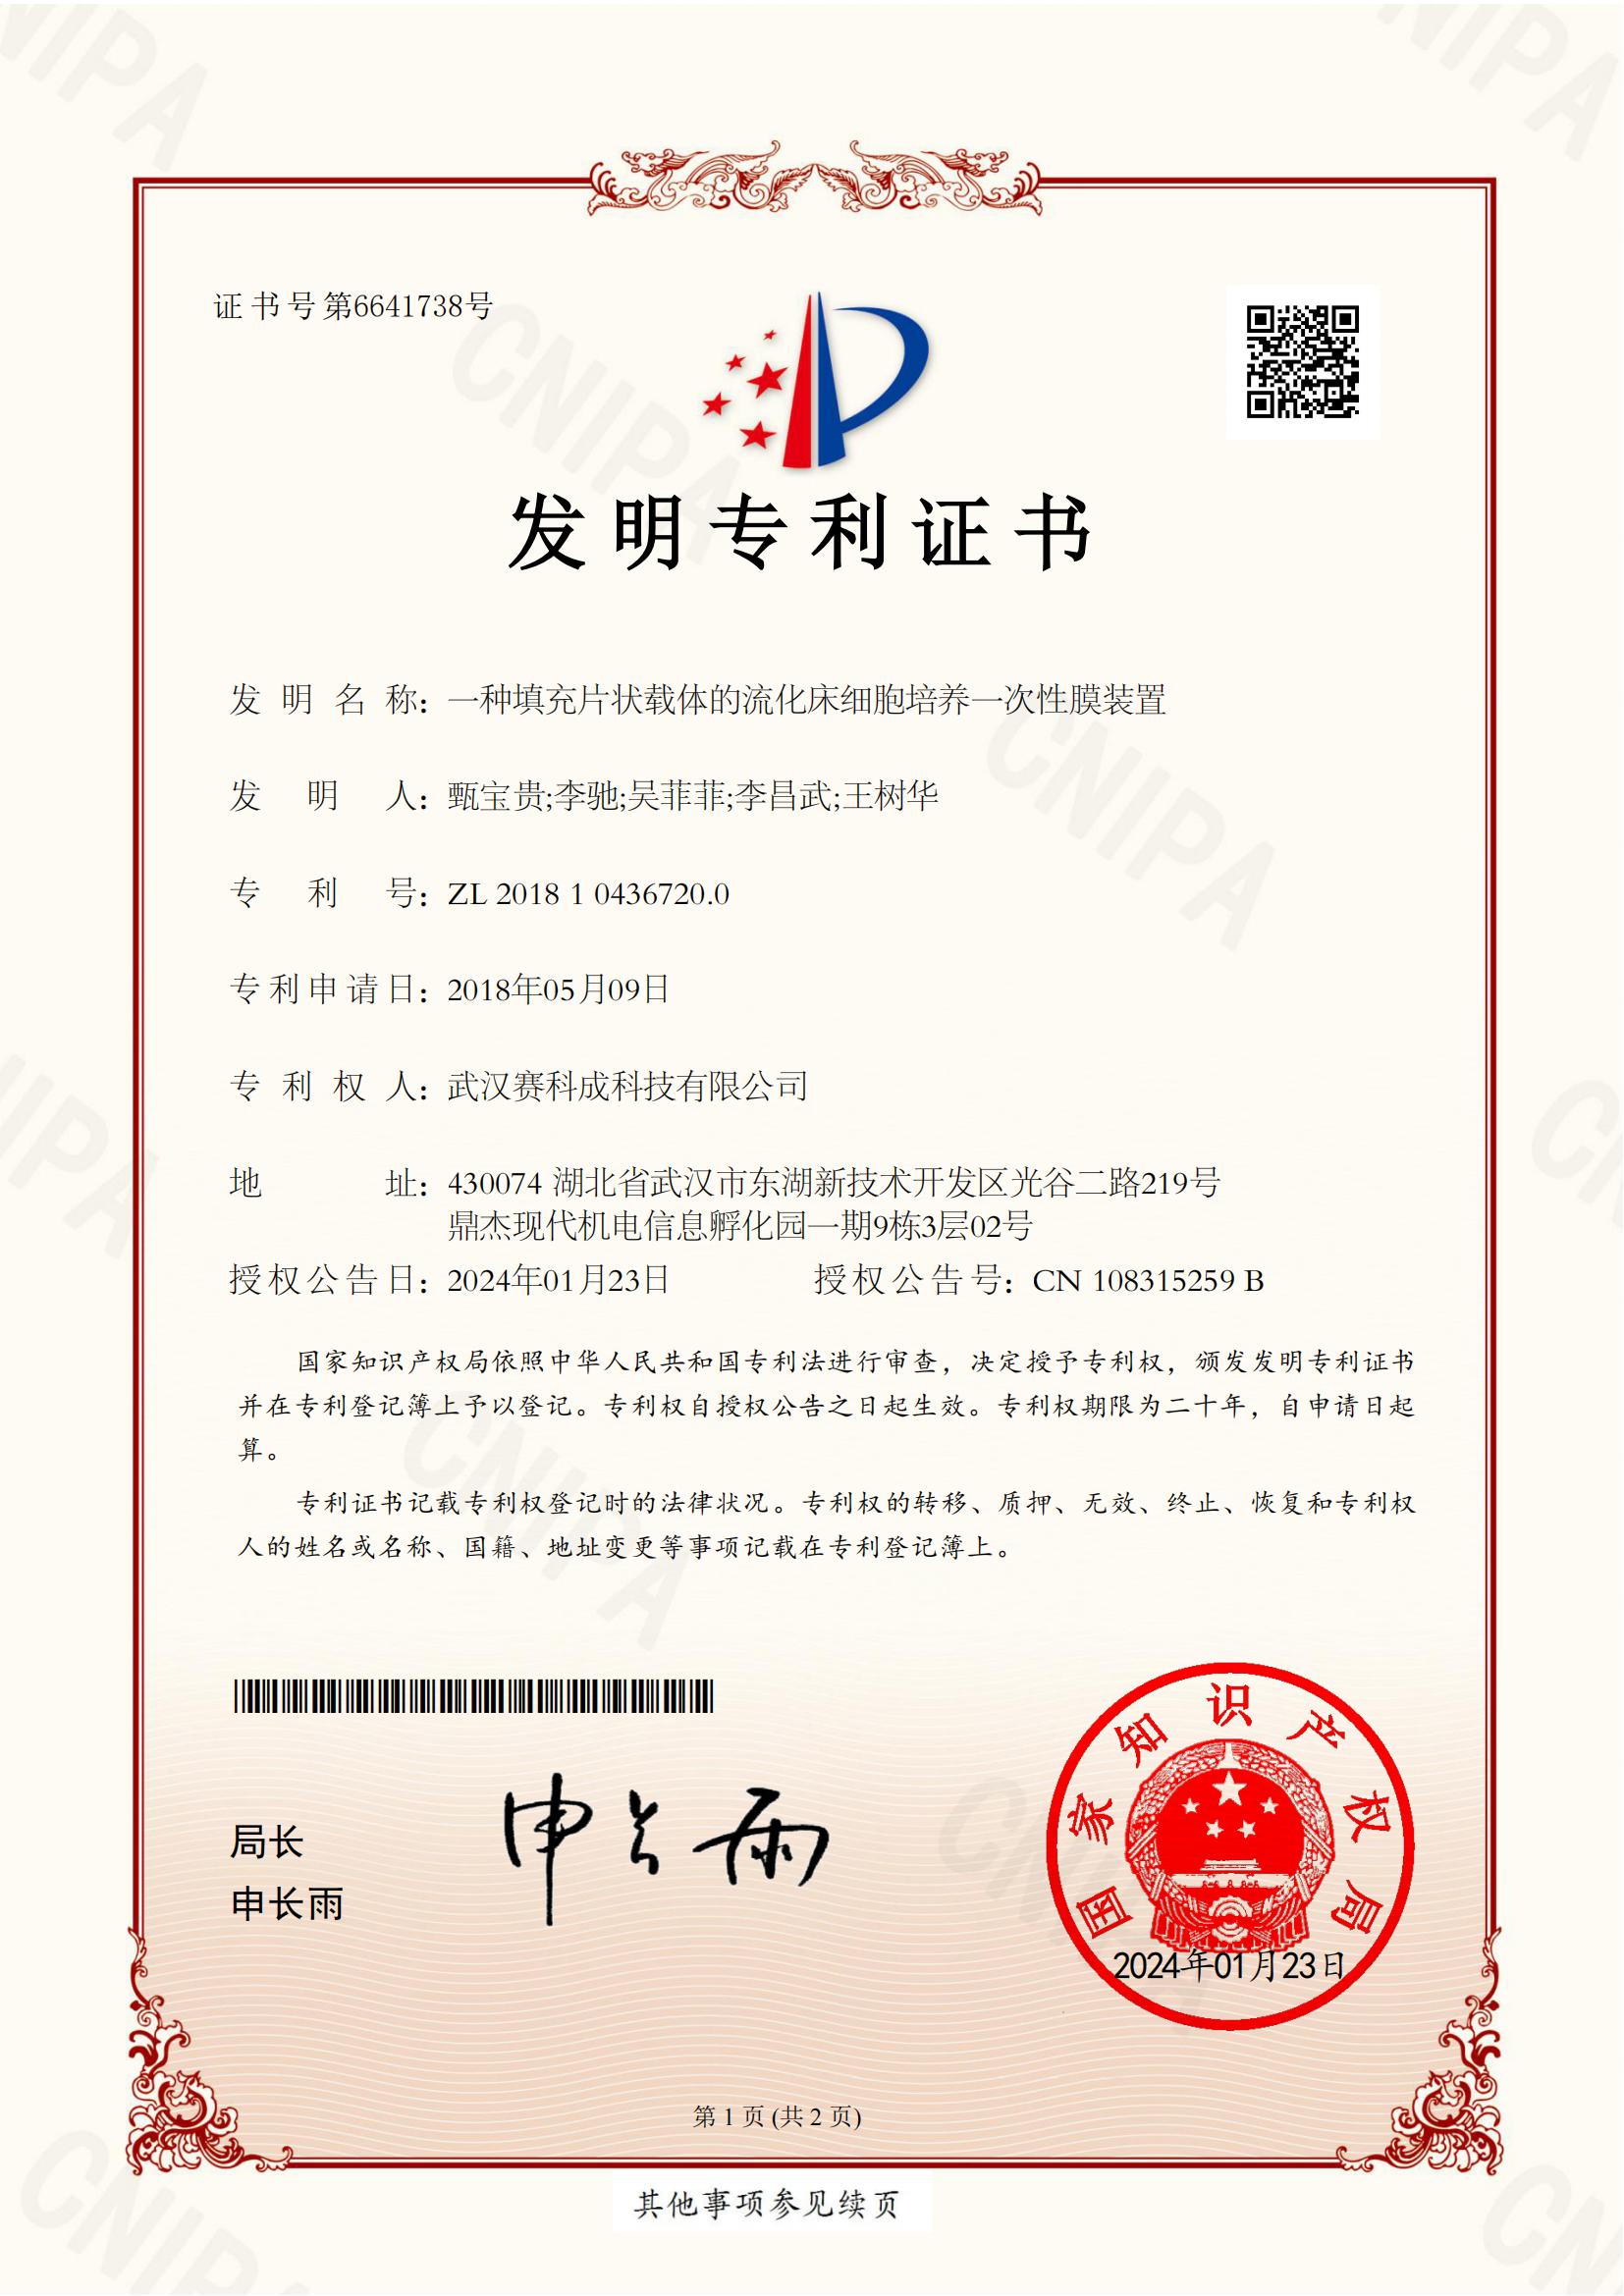 武汉赛科成科技有限公司-一种填充片状载体的流化床细胞培养一次性膜装置（2018104367200）-专利证书电子版_00.jpg